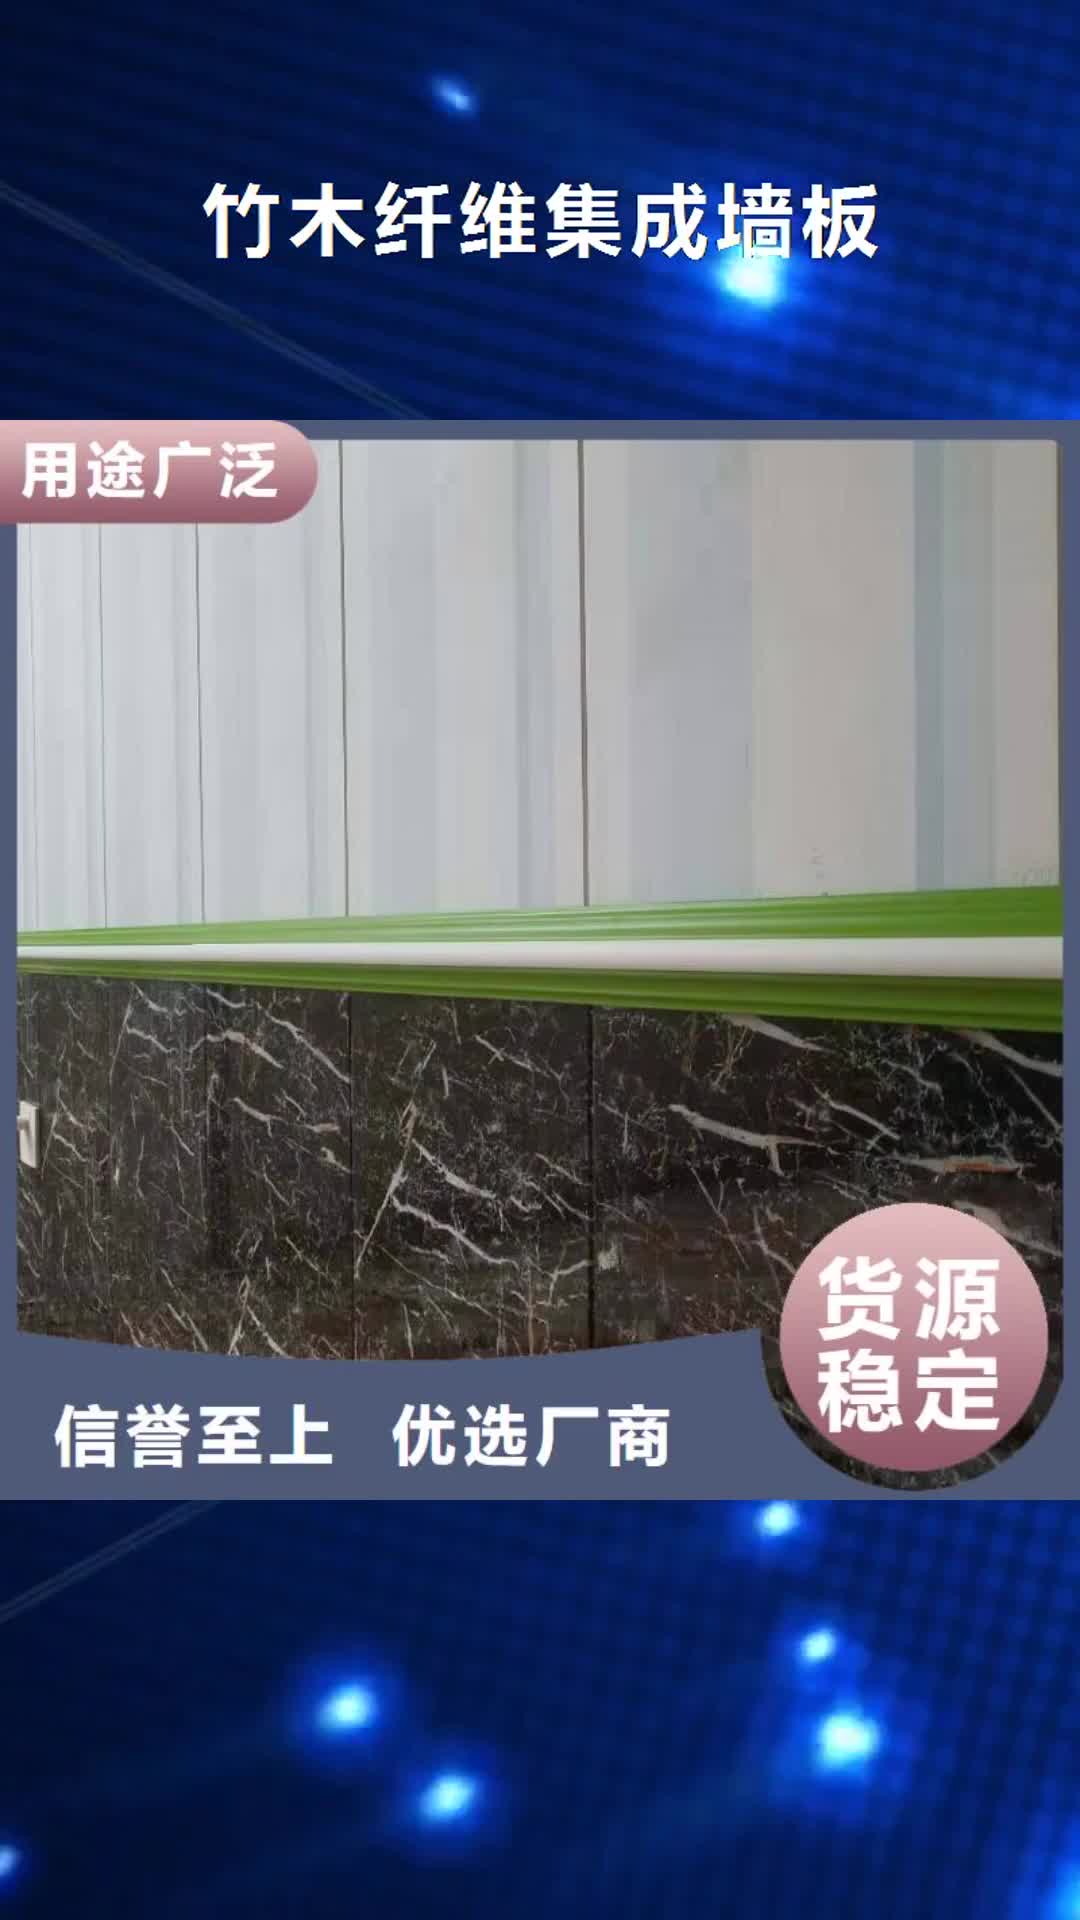 泸州 竹木纤维集成墙板 【木饰面】免费安装